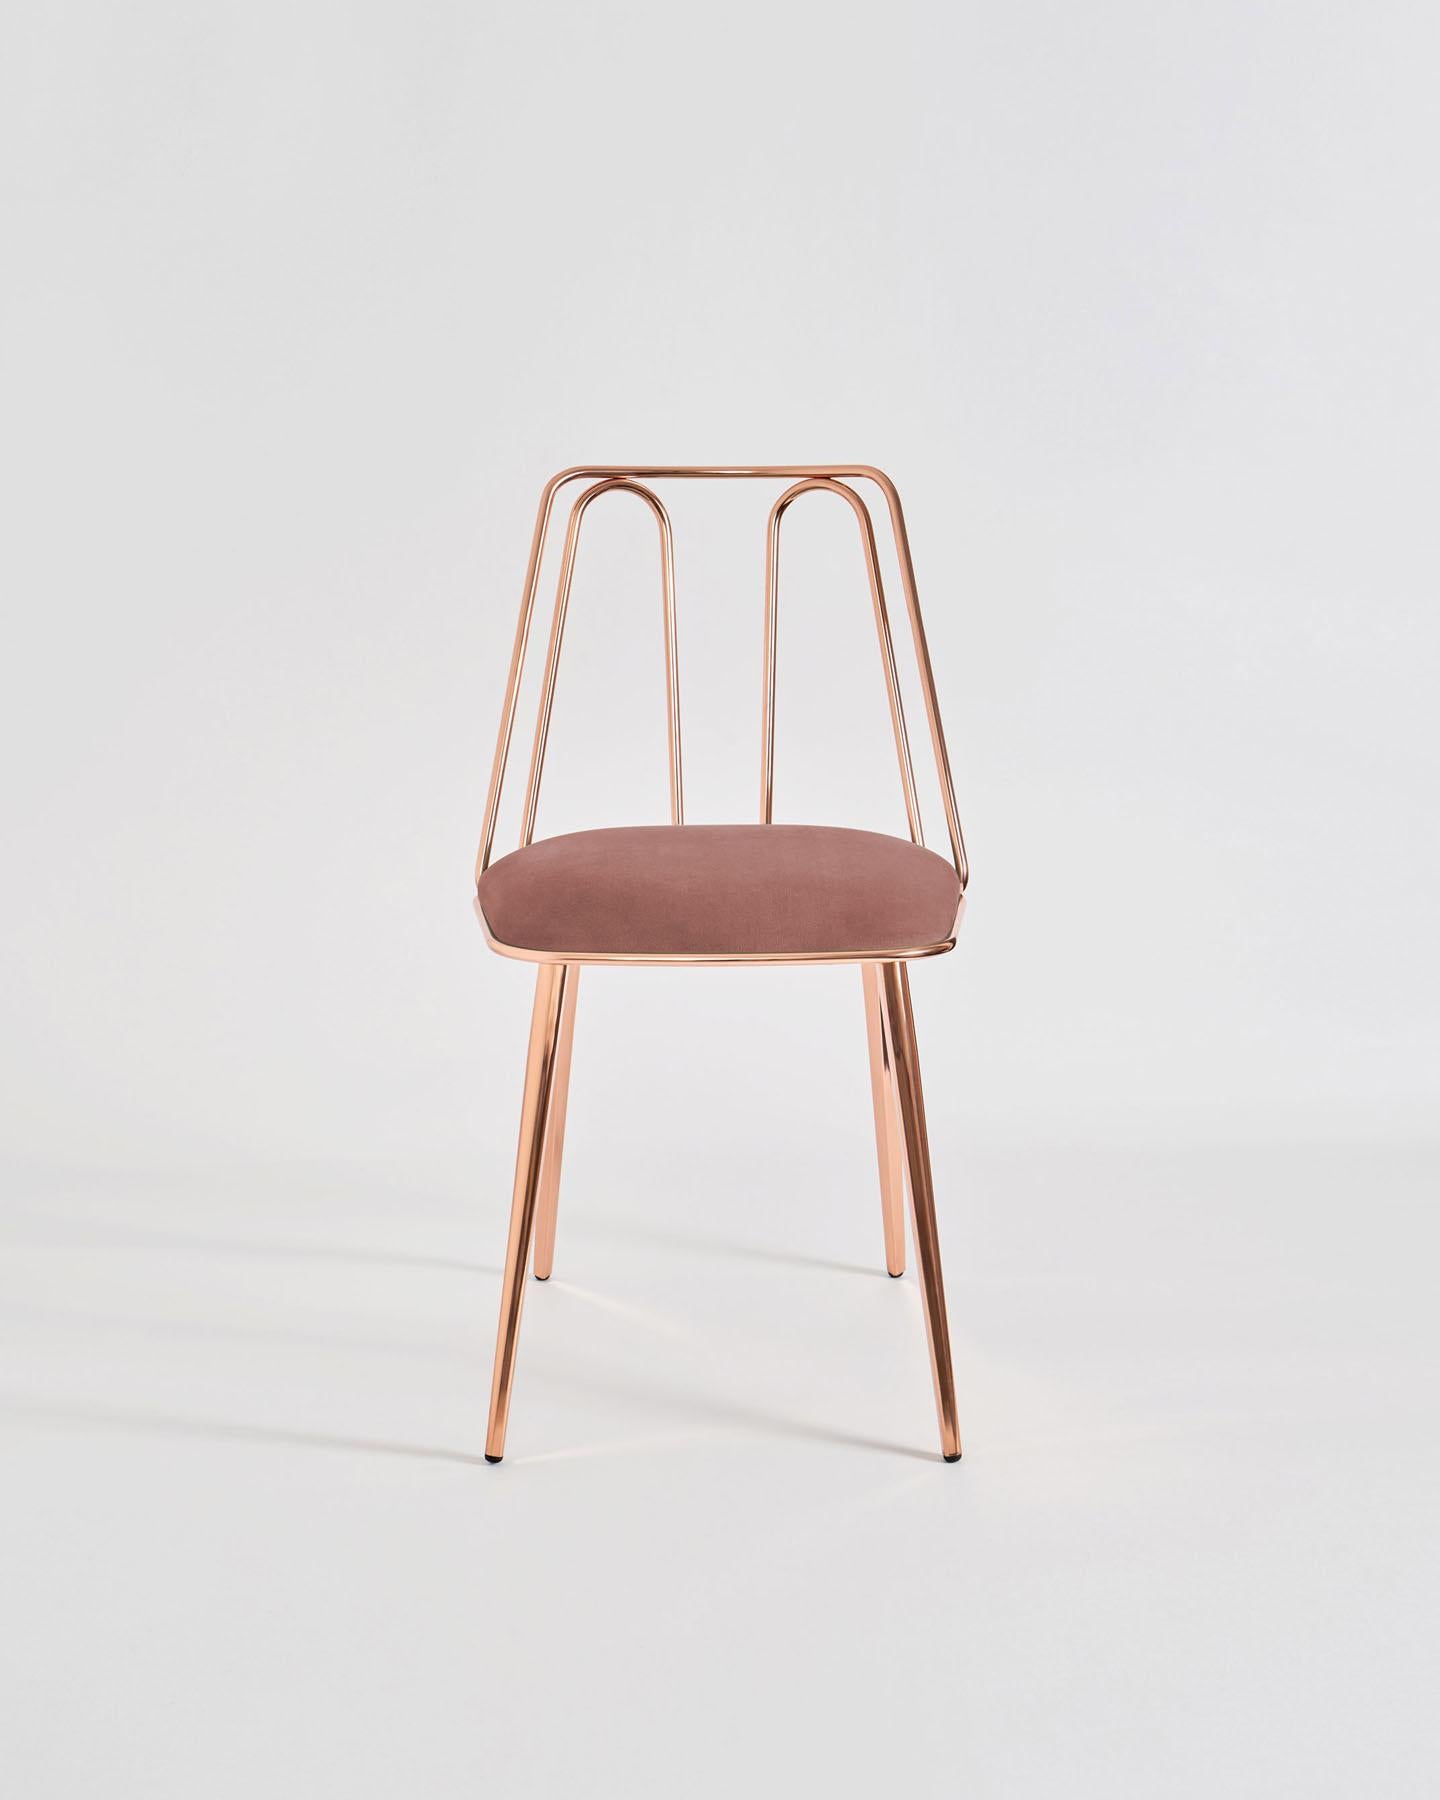 Certosina, Design/One Enrico Girotti, une fine tige métallique dessine la surface idéale du dossier avec un mouvement alternatif et sinueux, interagissant avec l'assise dans une étreinte à partir de laquelle des pieds de forme trapézoïdale se